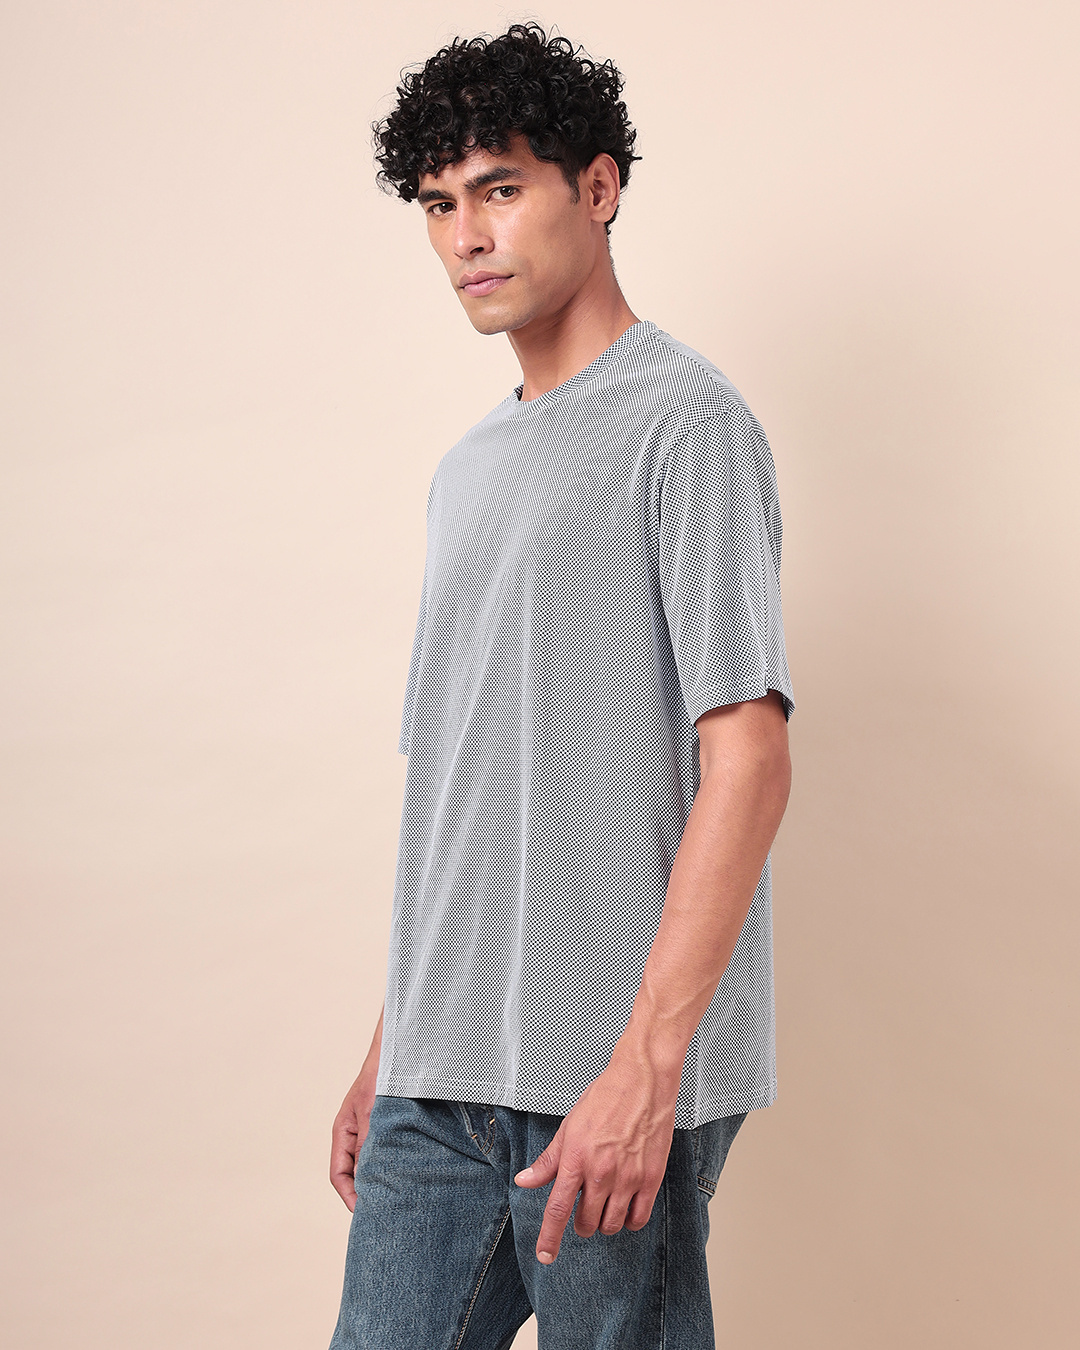 Buy Men's Blue Textured Oversized T-shirt Online at Bewakoof